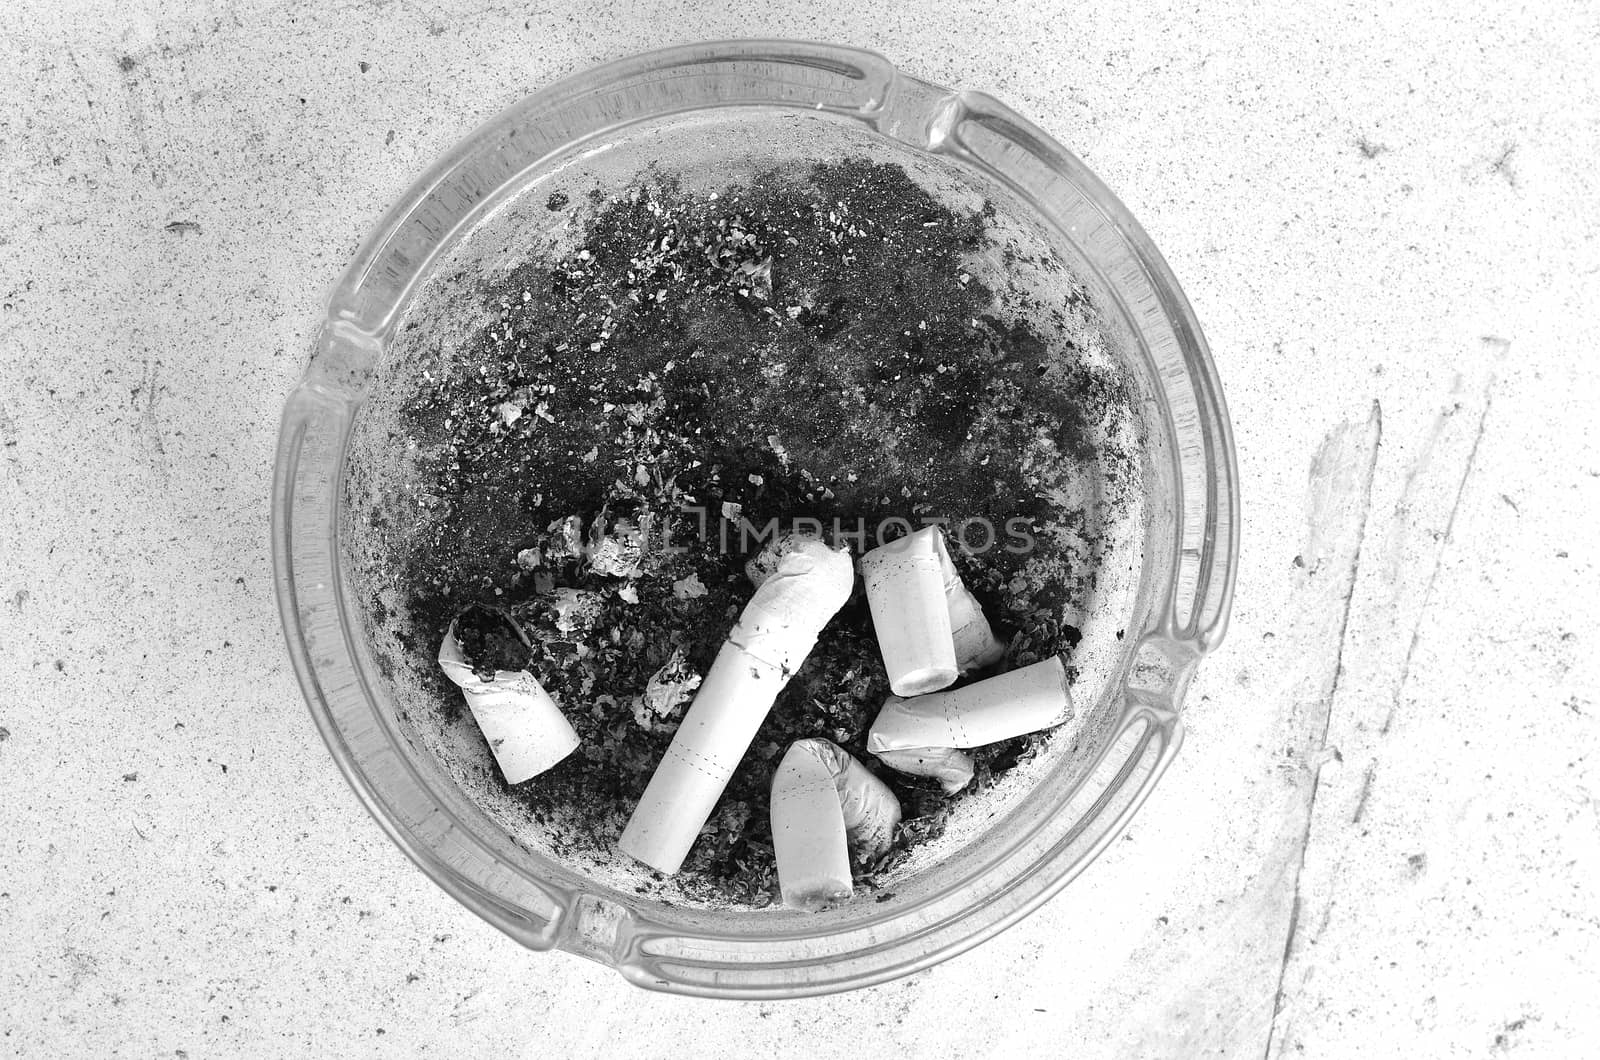 Ashtray full of cigarettes burn